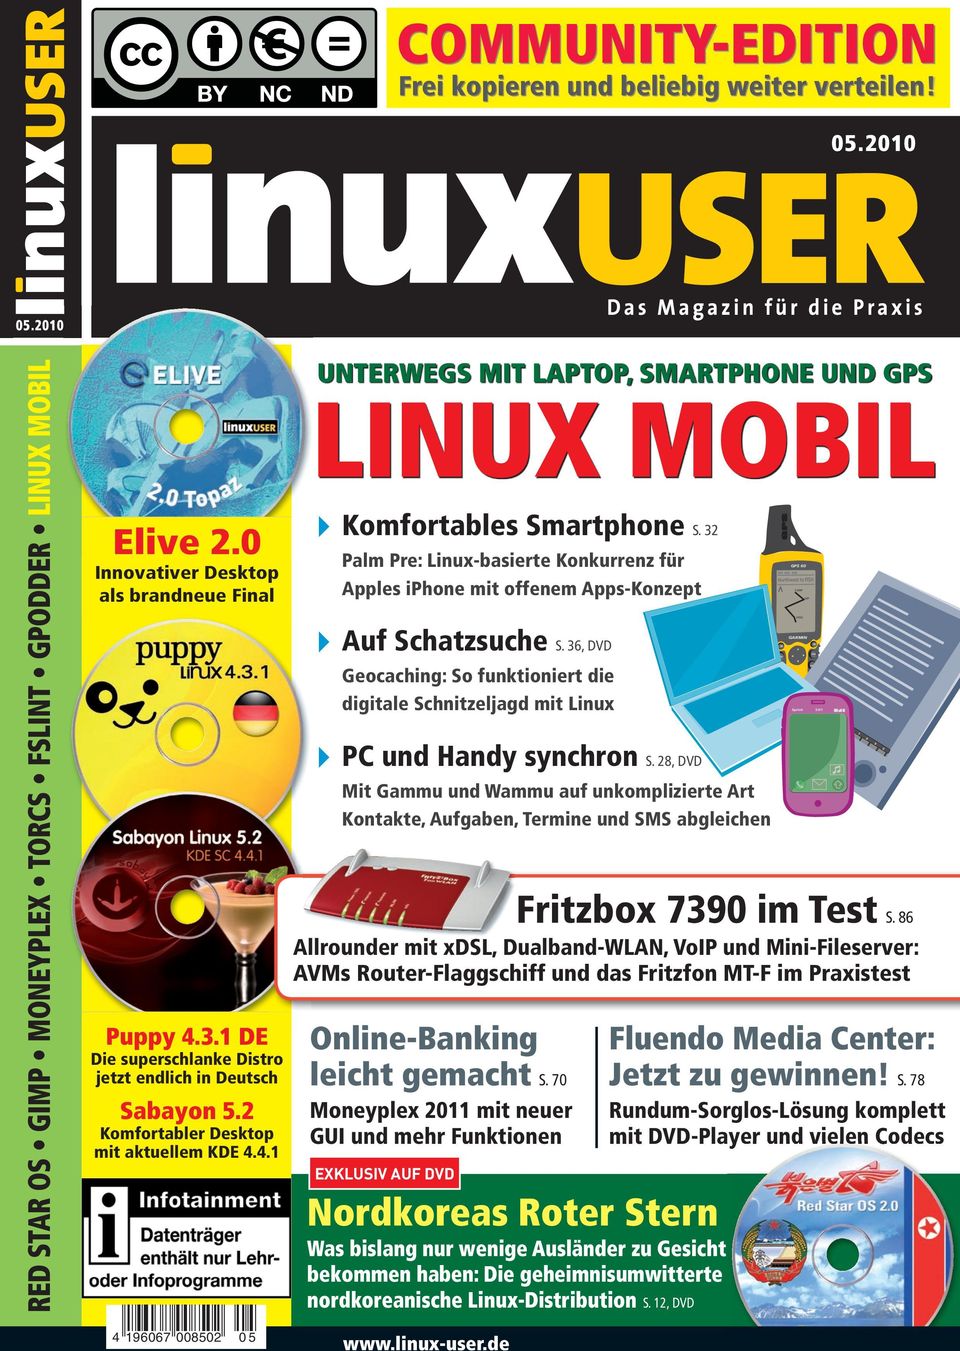 32 Palm Pre: Linux-basierte Konkurrenz für Apples iphone mit offenem Apps-Konzept Auf Schatzsuche S. 36, DVD Geocaching: So funktioniert die digitale Schnitzeljagd mit Linux PC und Handy synchron S.